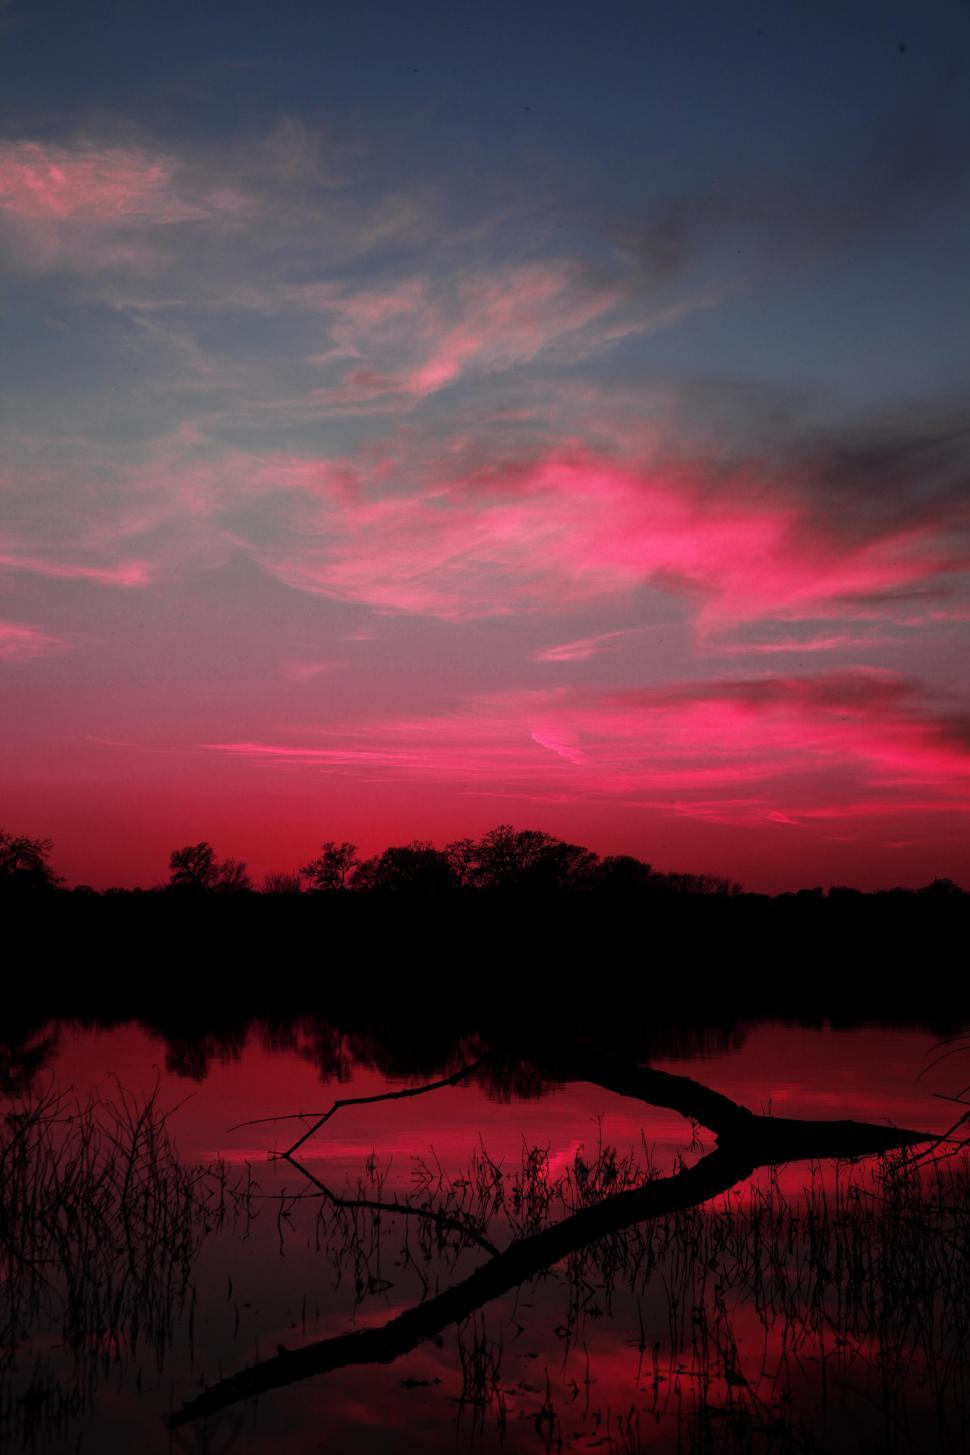 Free Image of Sunset reflection over lake 